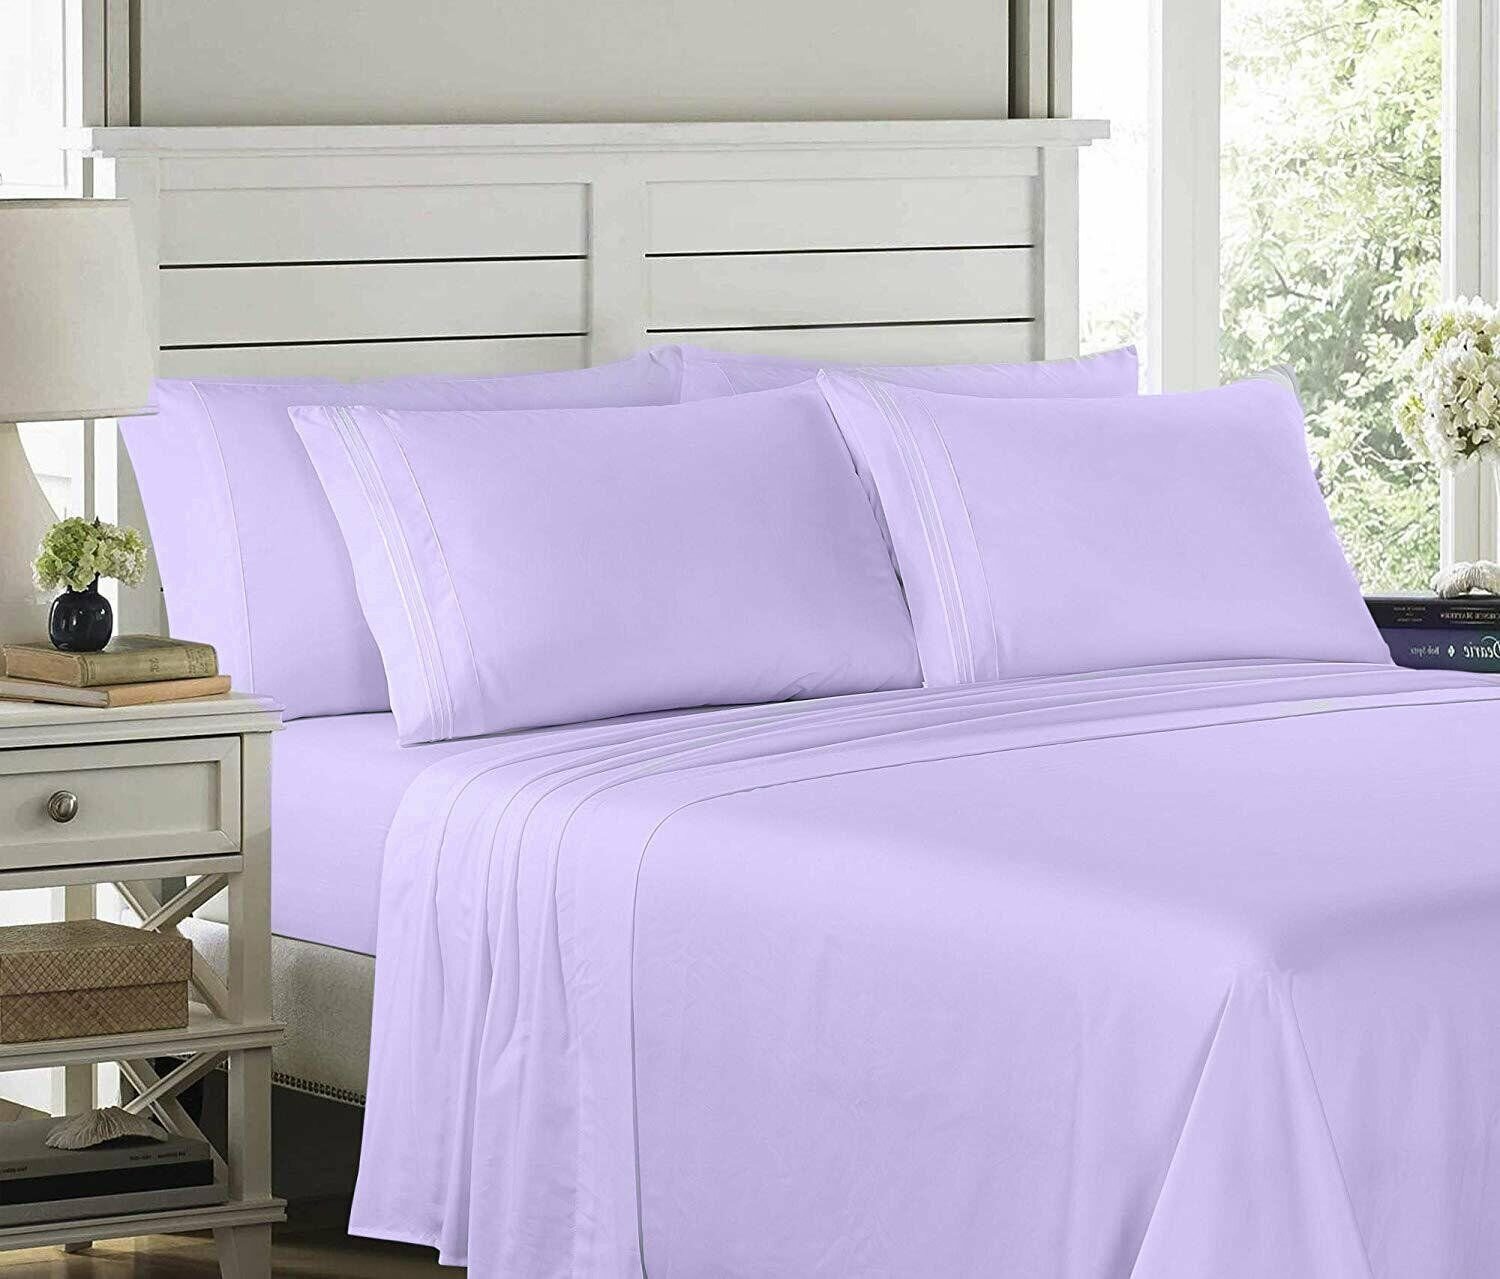 Embroidered Bed Sheet Set Ultra Soft Comfort Wrinkle Resistant